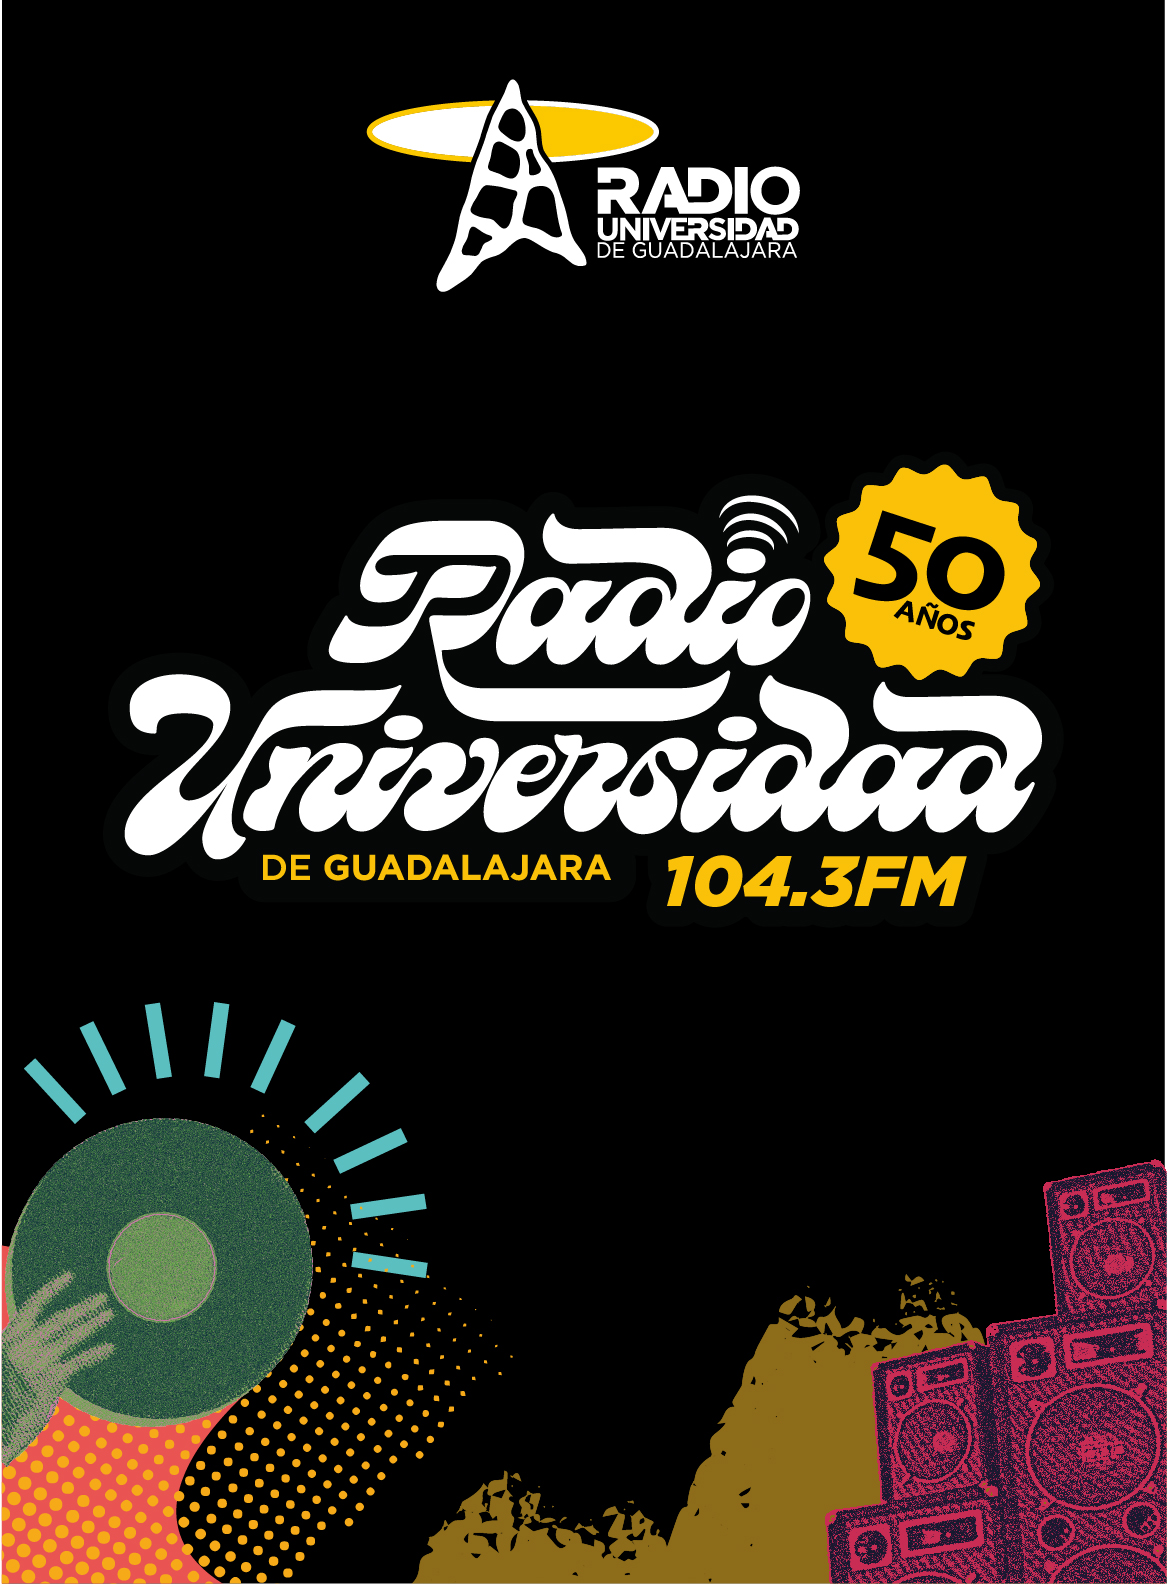 50 Años, Radio Universidad de Guadalajara 104.3 F.M.